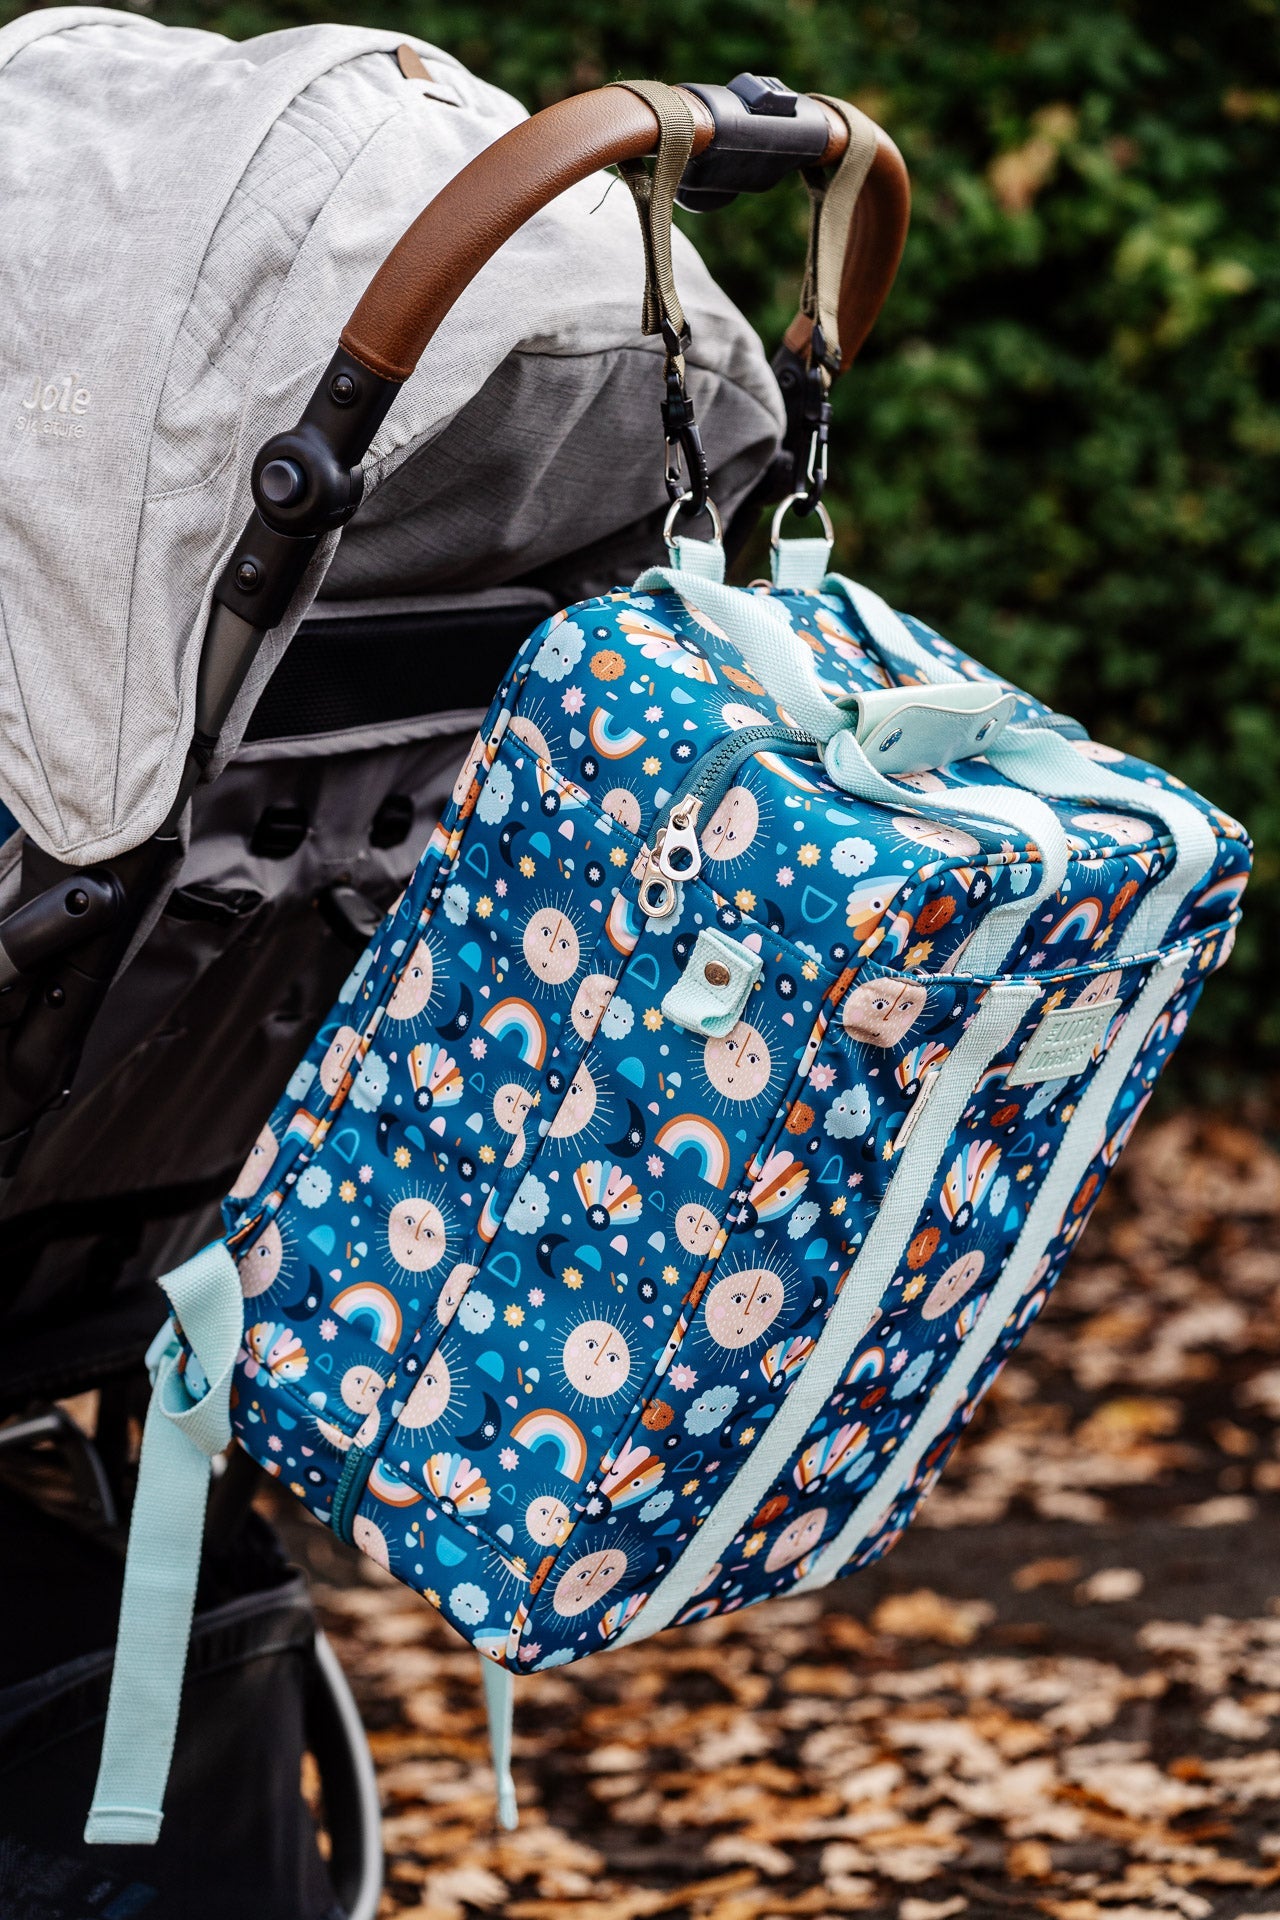 Folding Suitcase Backpack